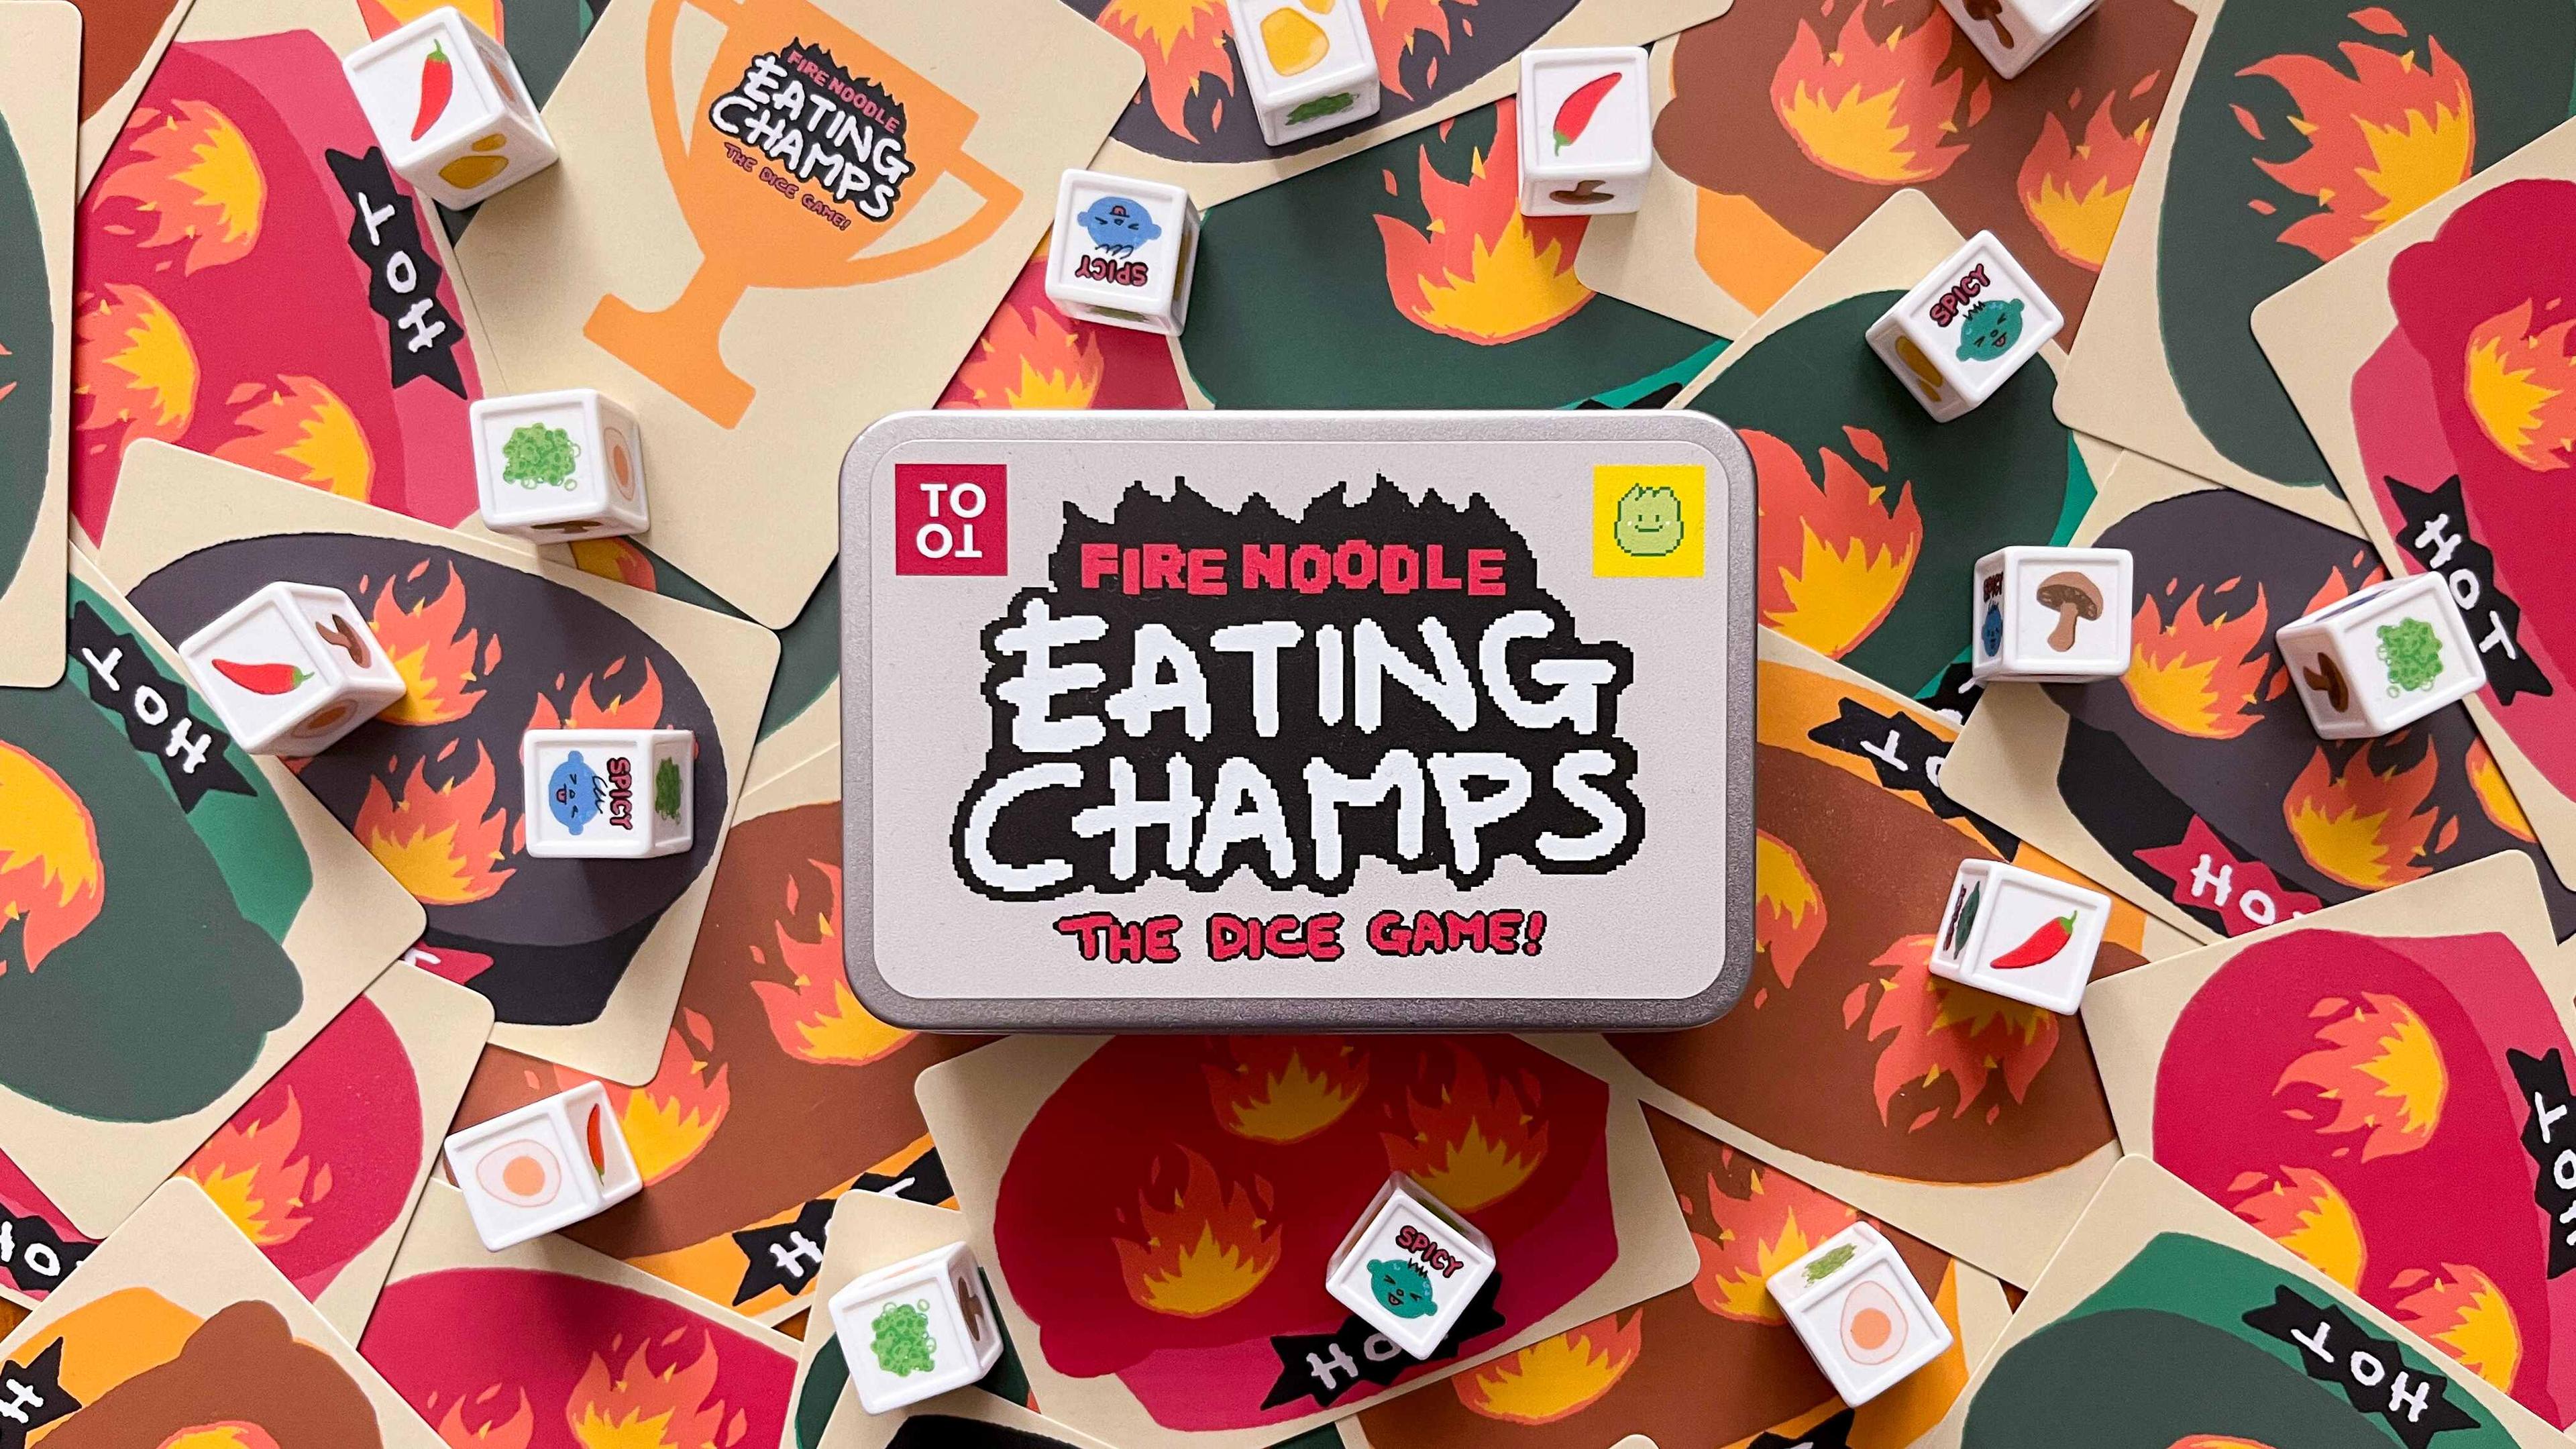 Fire Noodle Eating Champs arrives on Kickstarter December 1